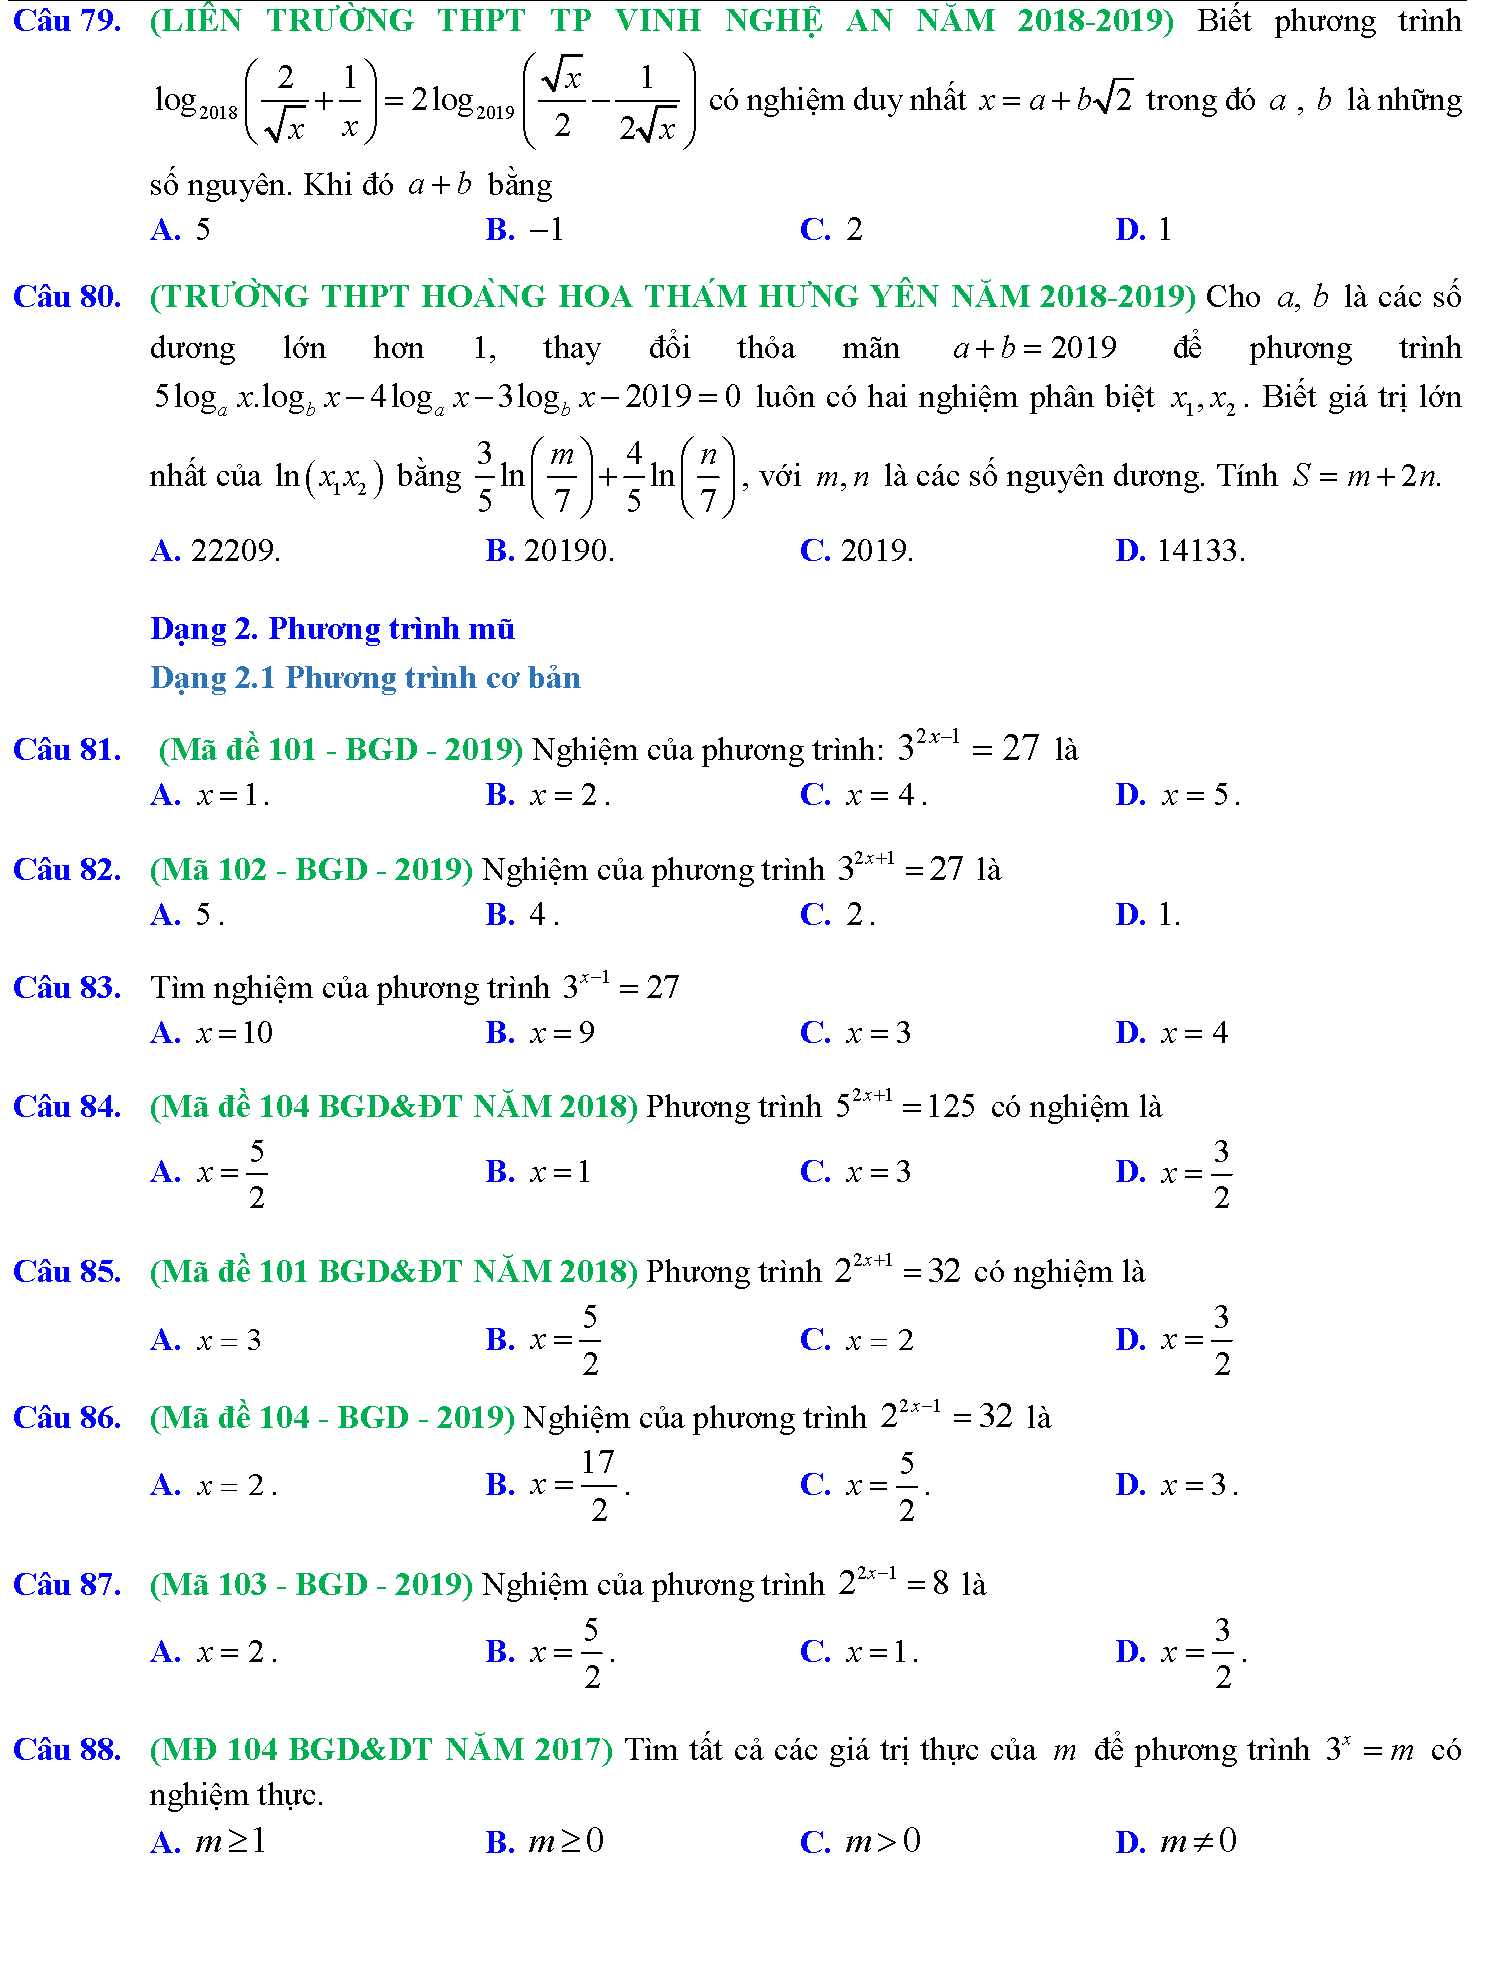 Phương trình mũ, phương trình logarit trong kỳ thi THPTQG 11